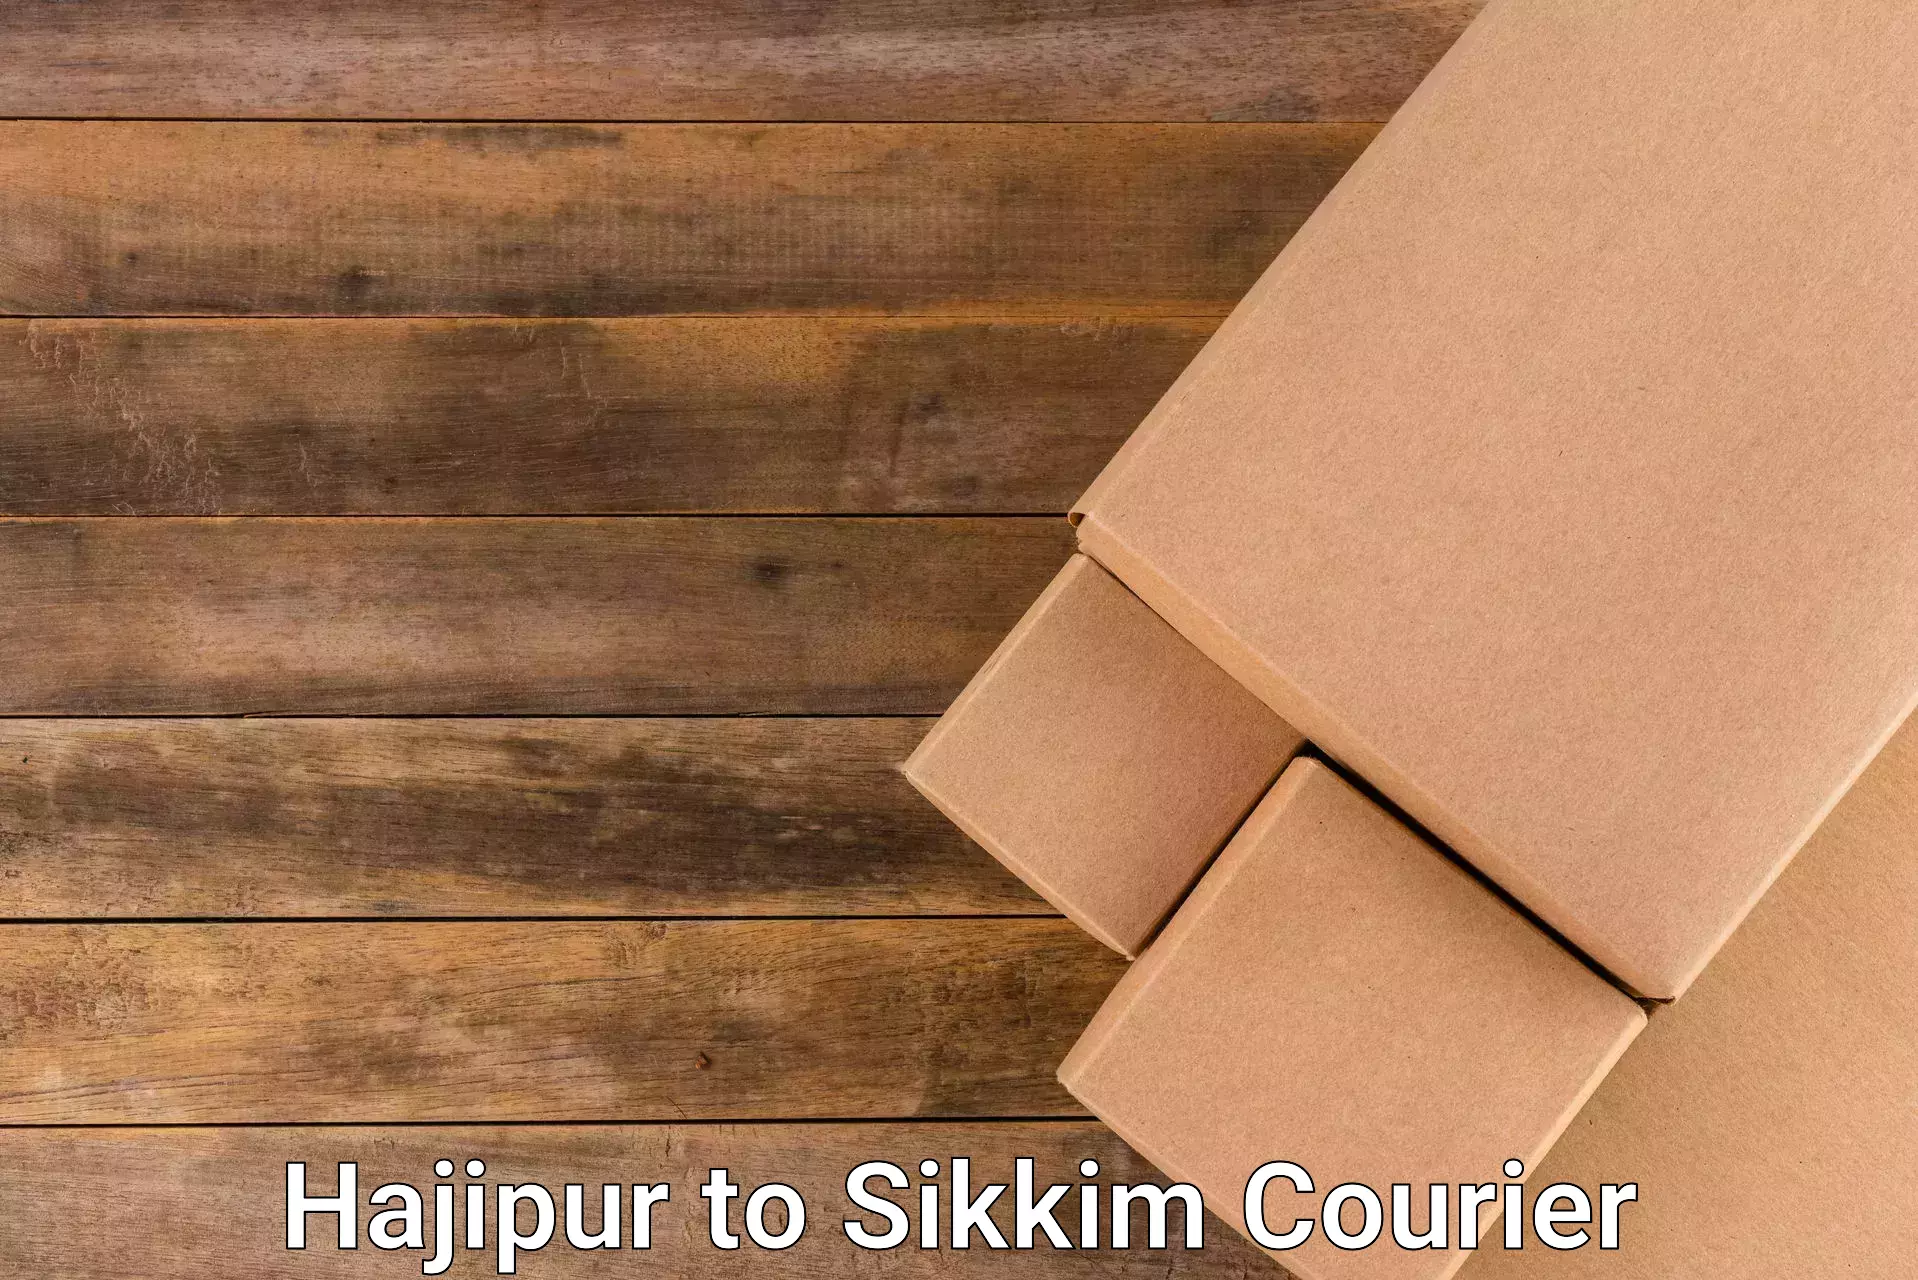 Efficient parcel service Hajipur to Pelling